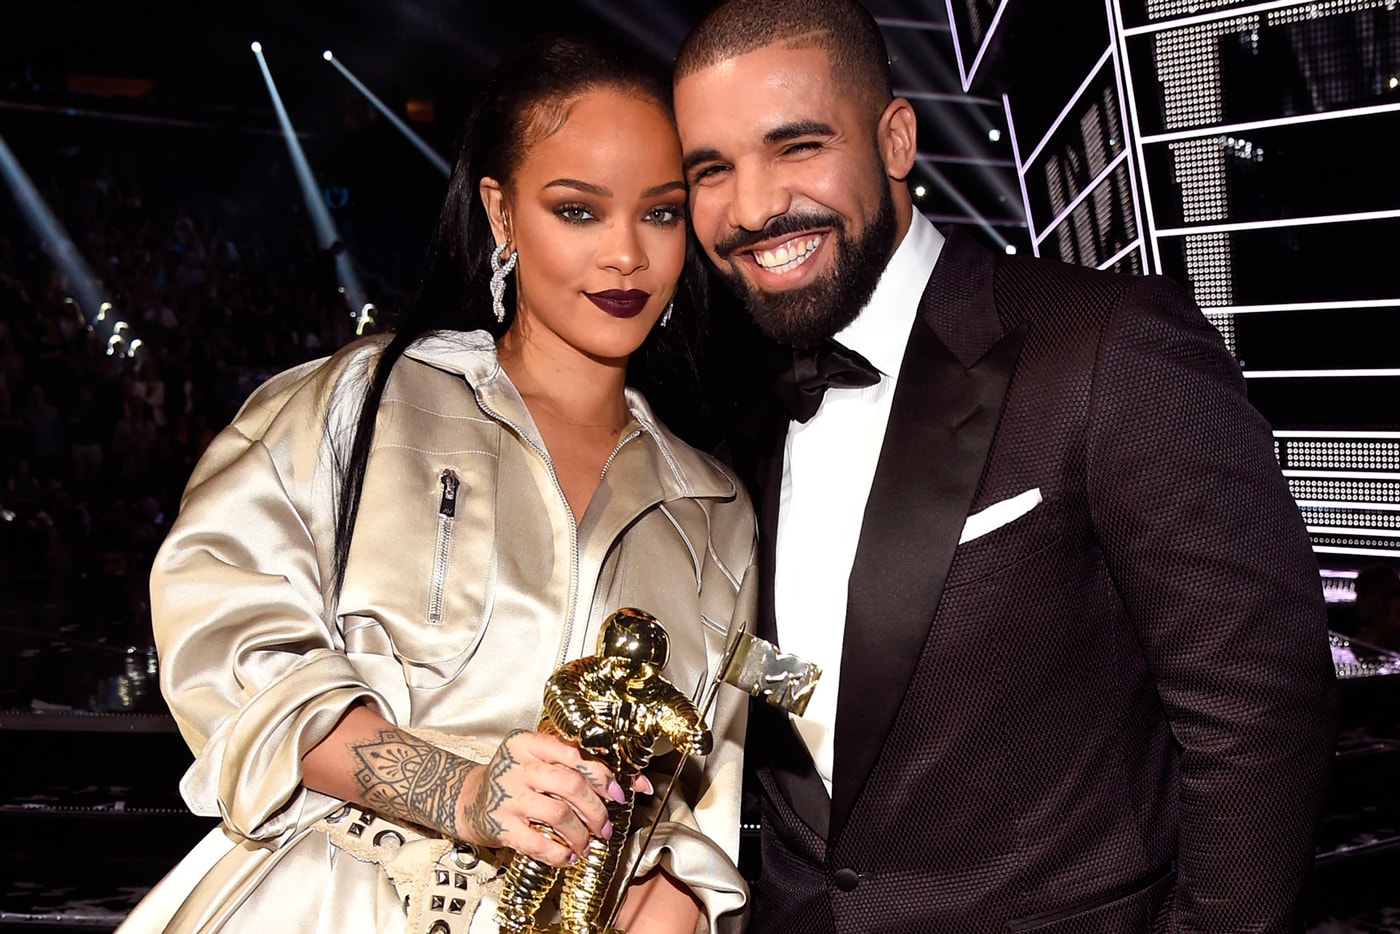 Drake Presents Rihanna the Video Vanguard Award at 2016 VMAs